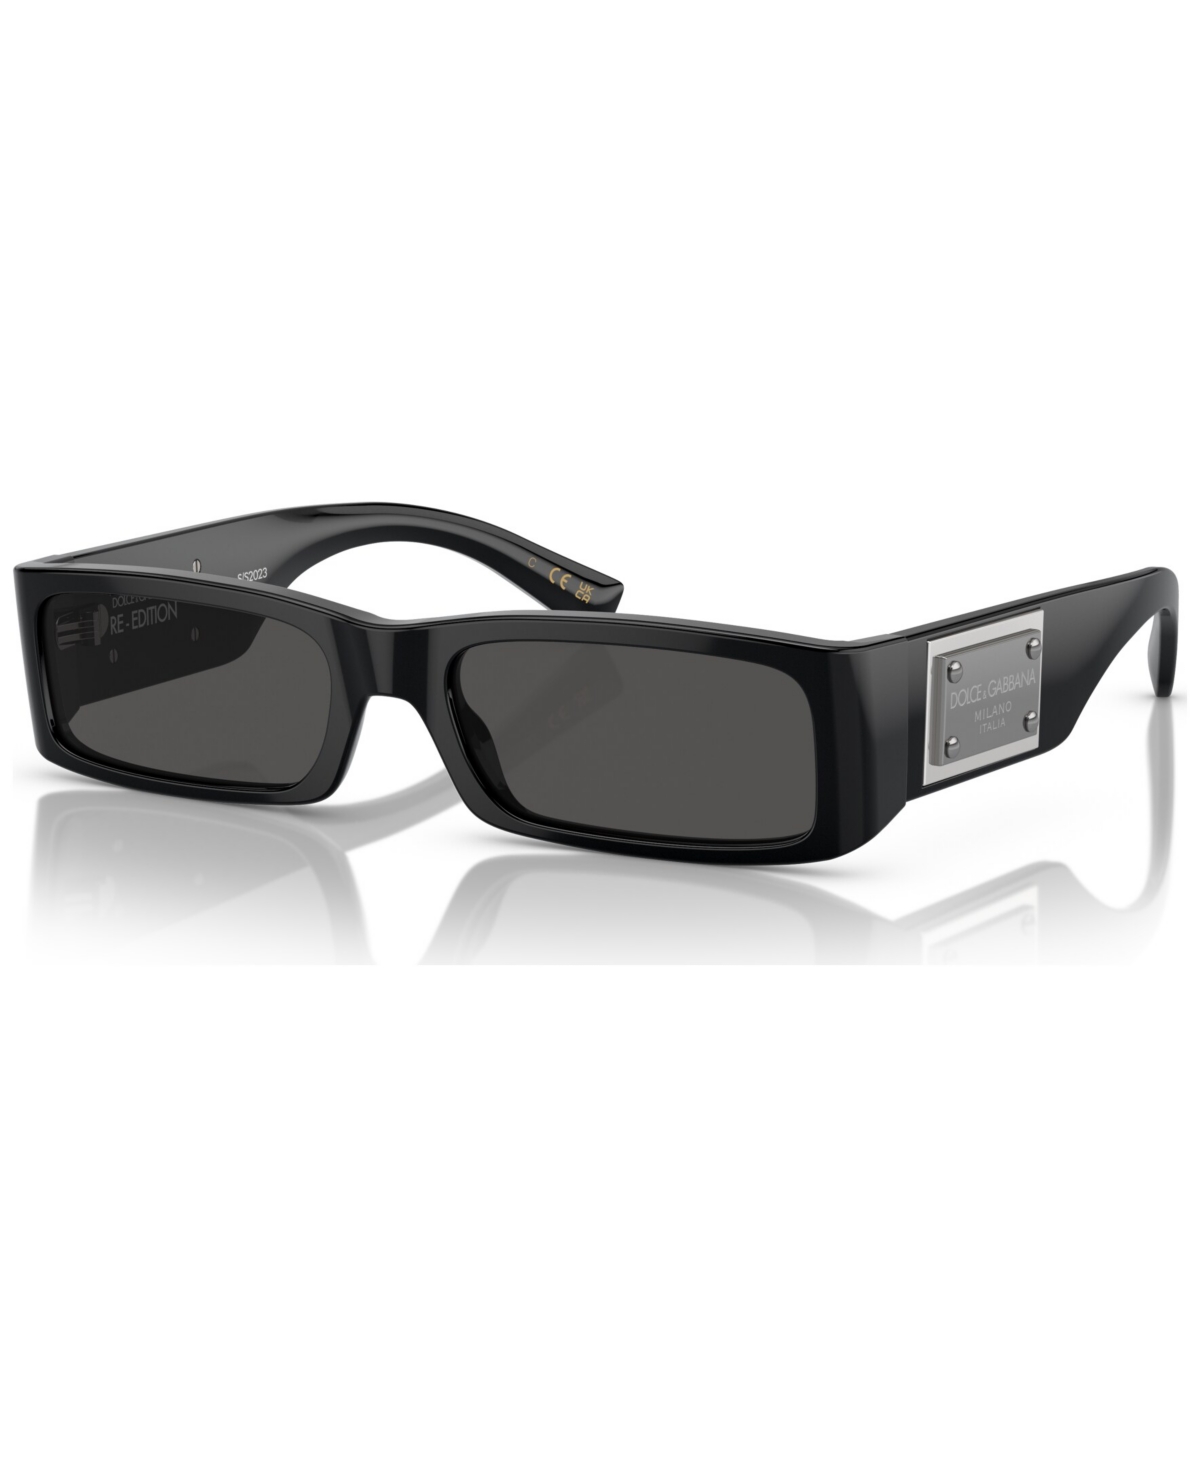 Dolce & Gabbana Men's Sunglasses, Dg4444 In Black